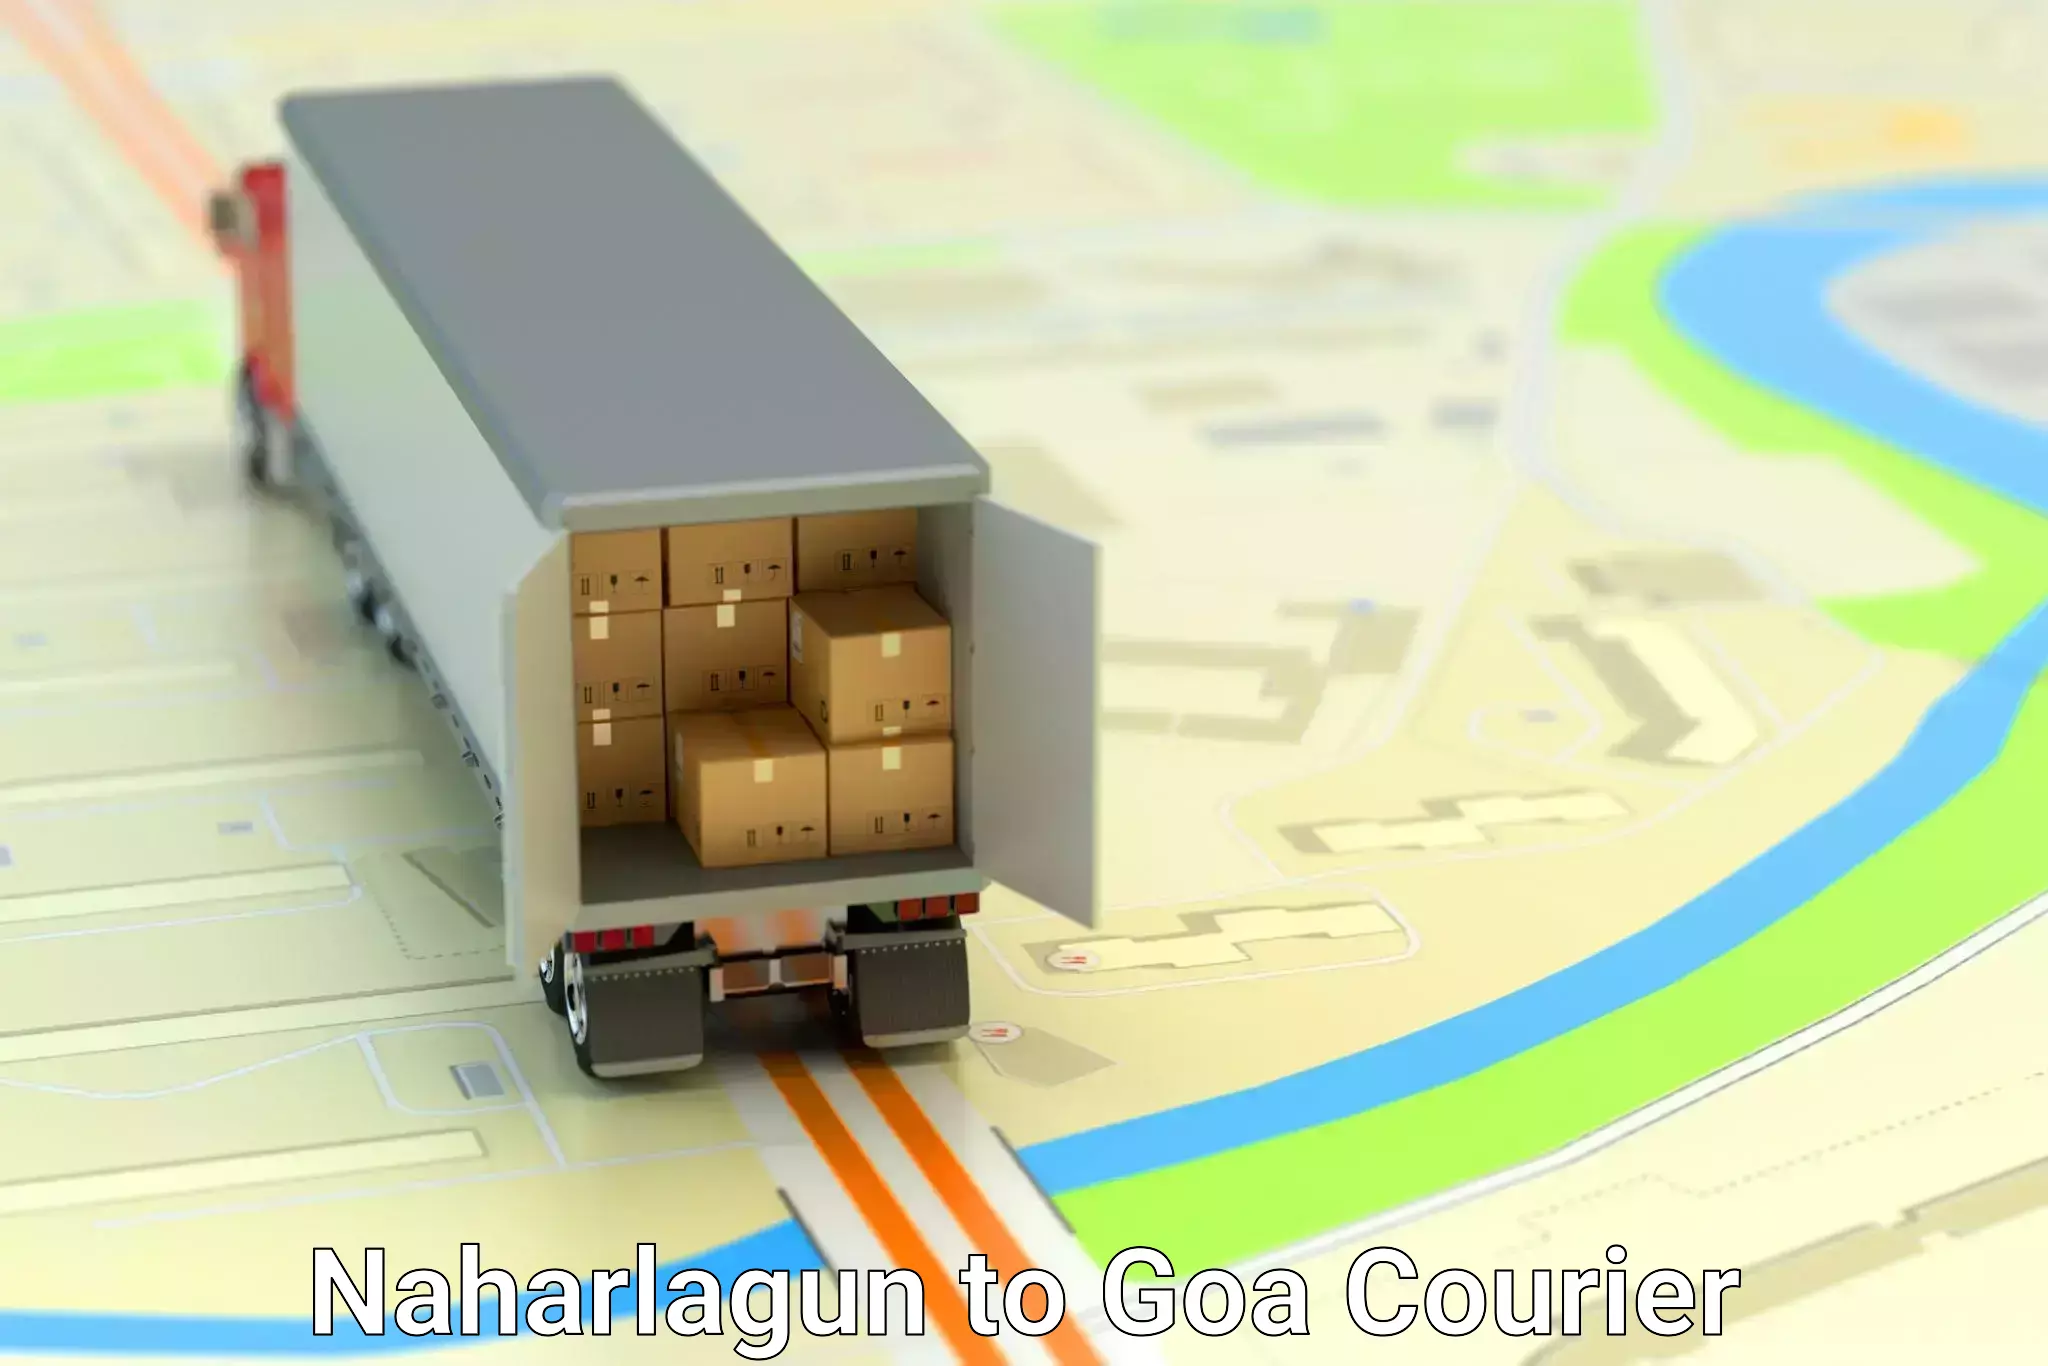 Logistics service provider Naharlagun to Goa